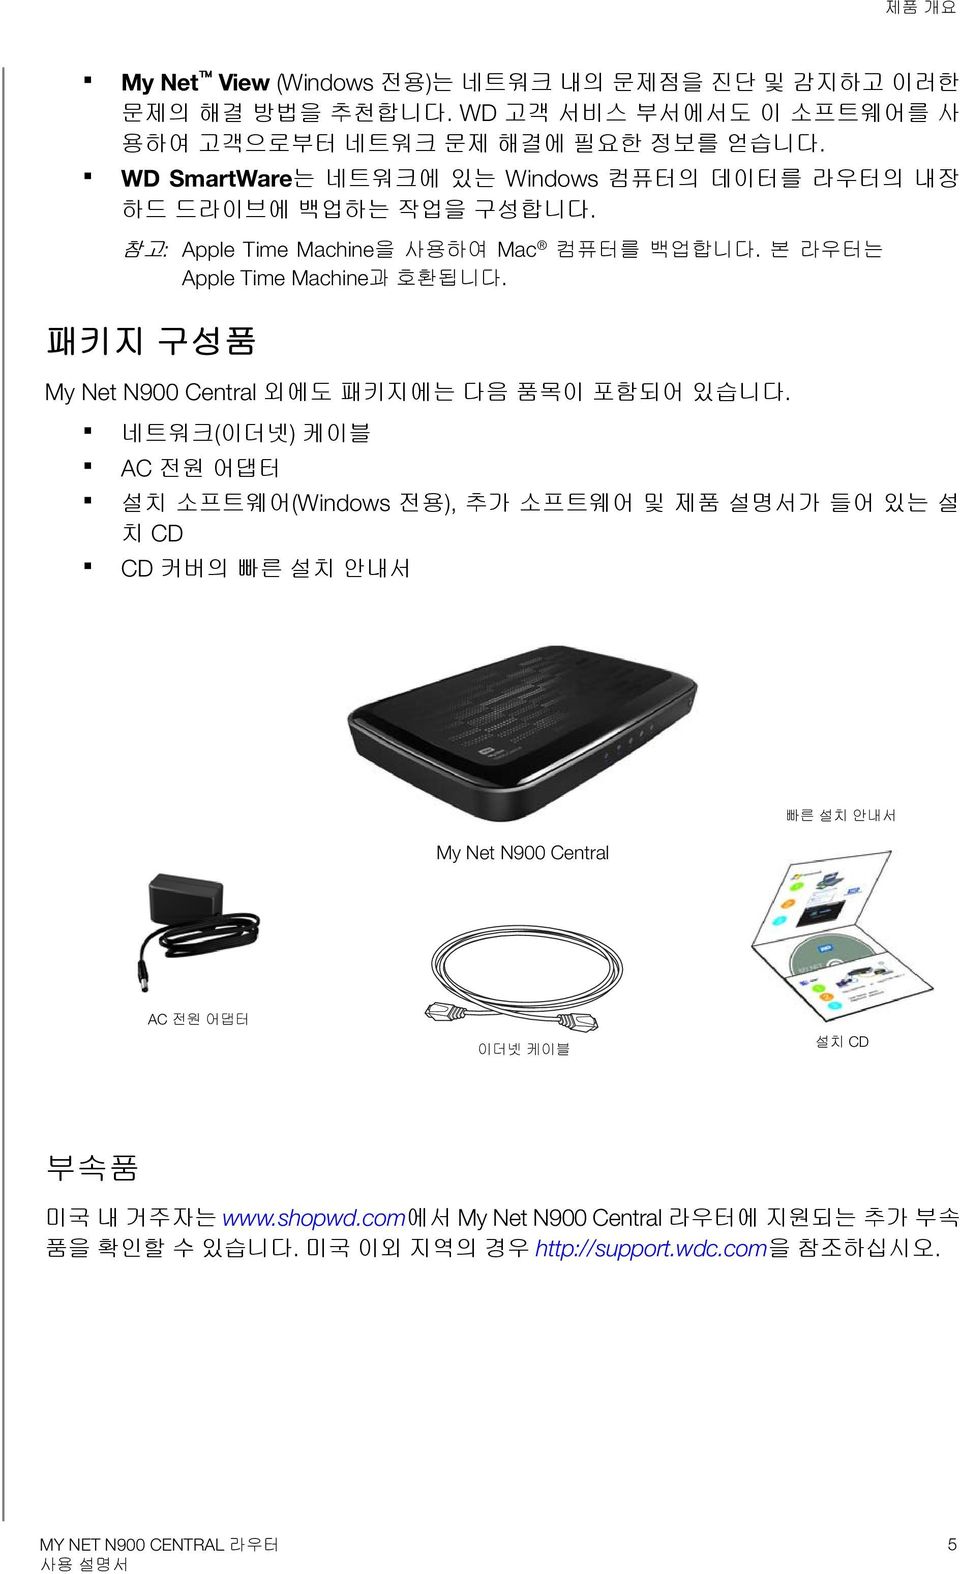 패키지 구성품 My Net N900 Central 외에도 패키지에는 다음 품목이 포함되어 있습니다.